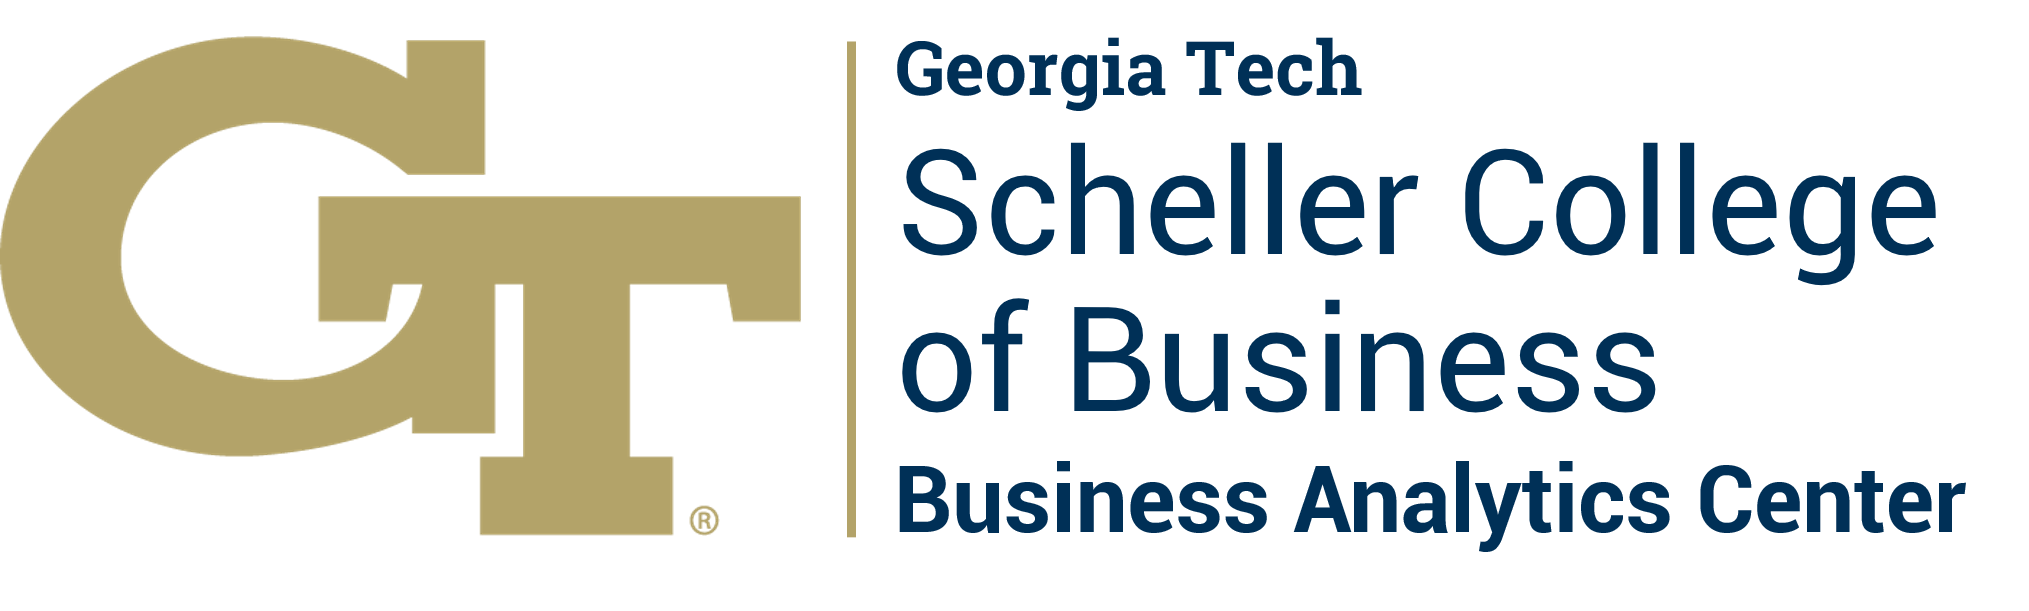 Georgia Tech Scheller Business Analytics Center